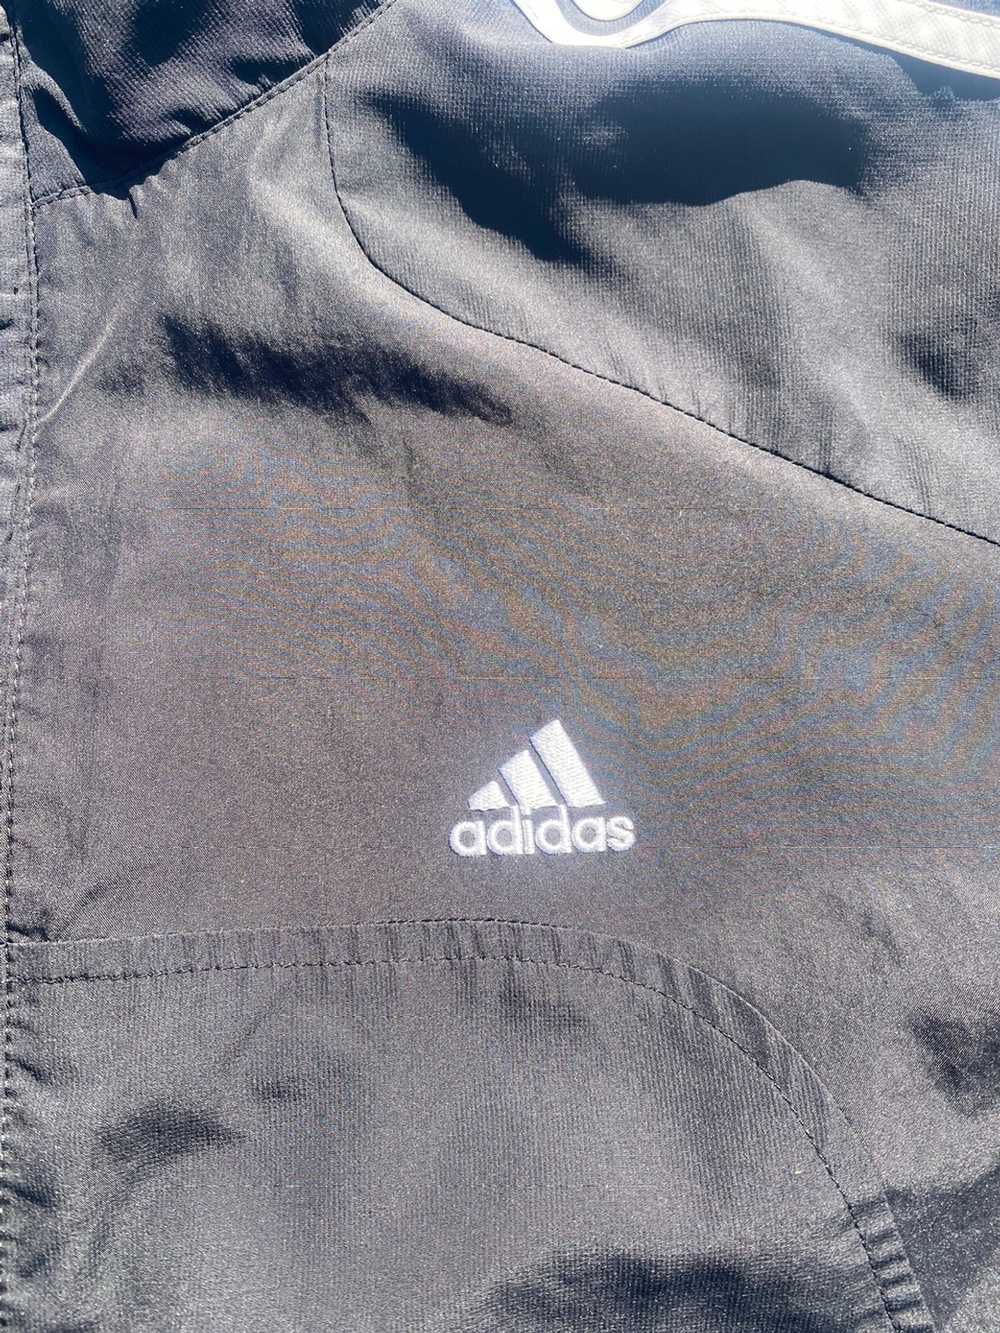 Adidas Adidas Track Jacket - image 2